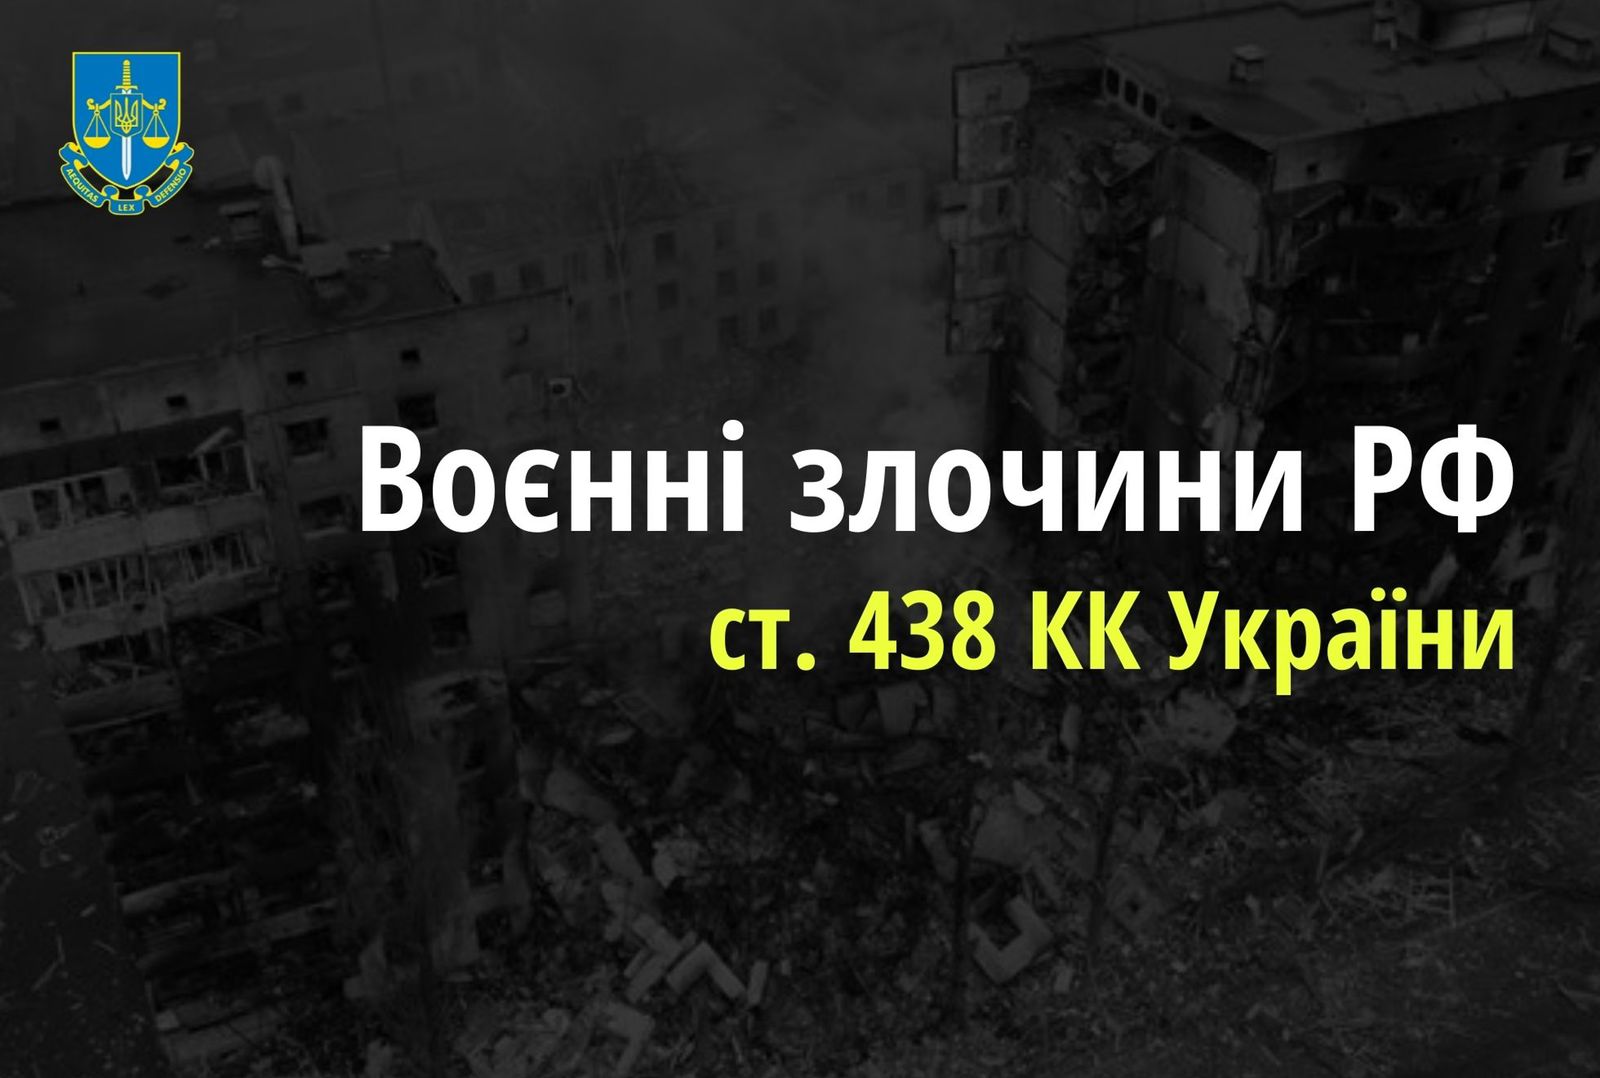 Чергові обстріли населених пунктів Луганської області – розпочато провадження